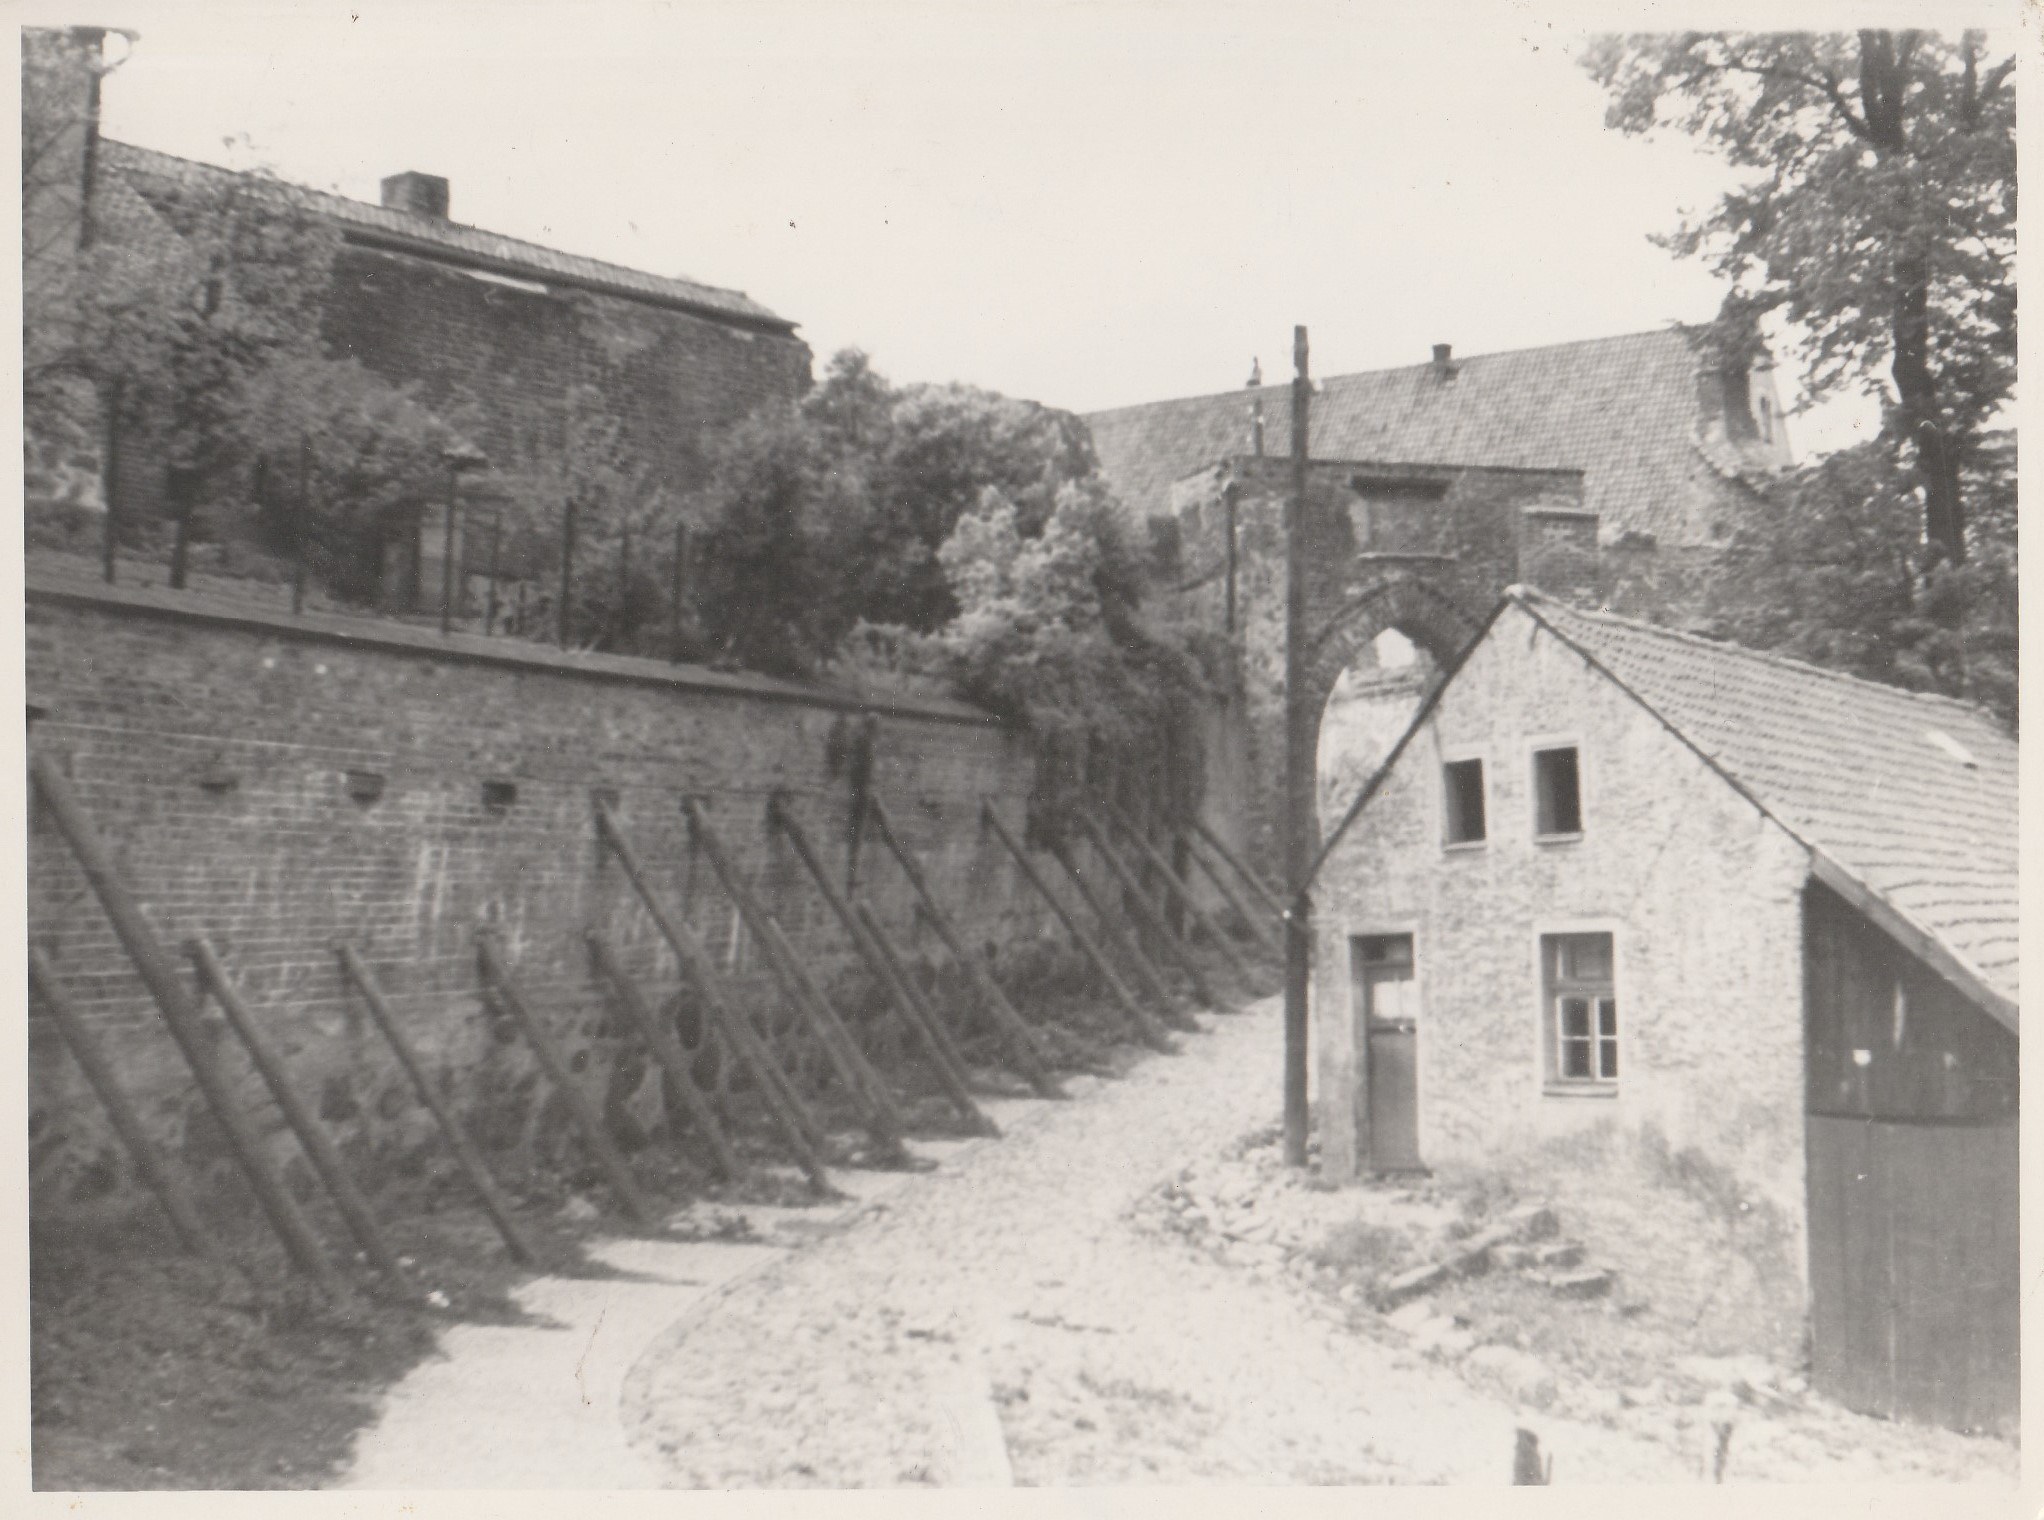  Mury przy Bramie Młynskiej, zdjęcie z 1948 roku 